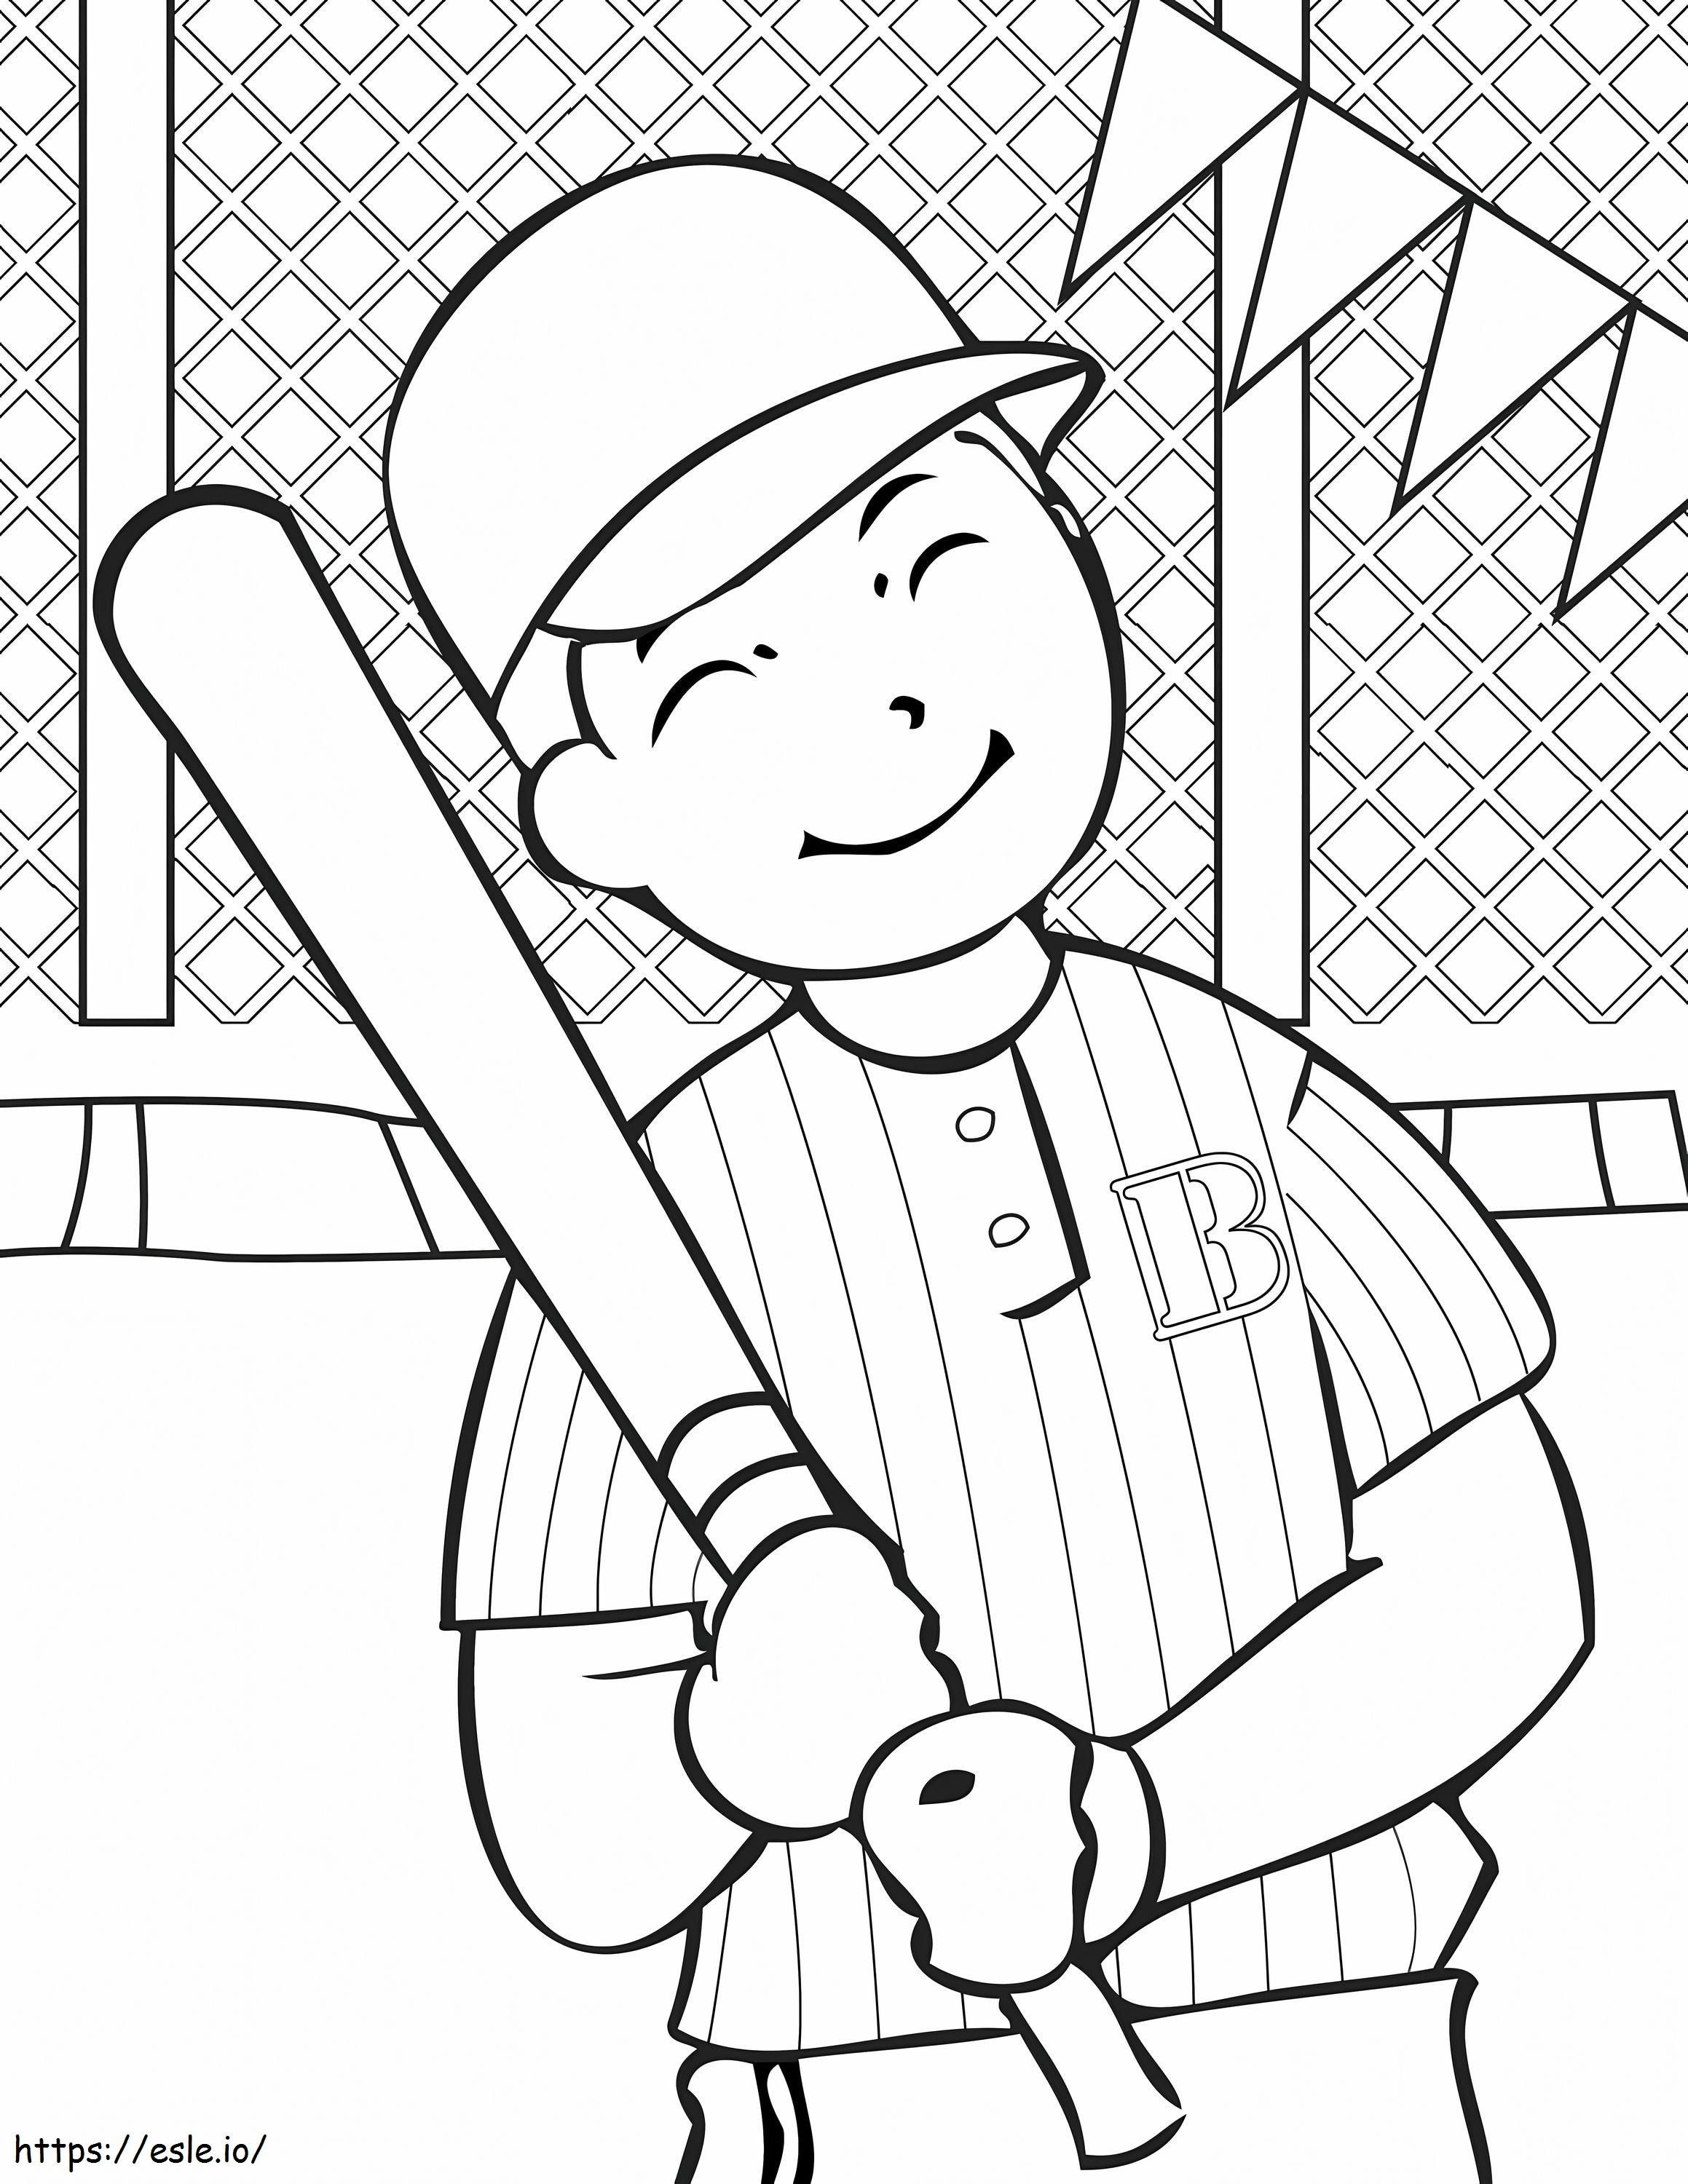 Coloriage 1539400498 Sports Joueur de baseball mignon à imprimer dessin